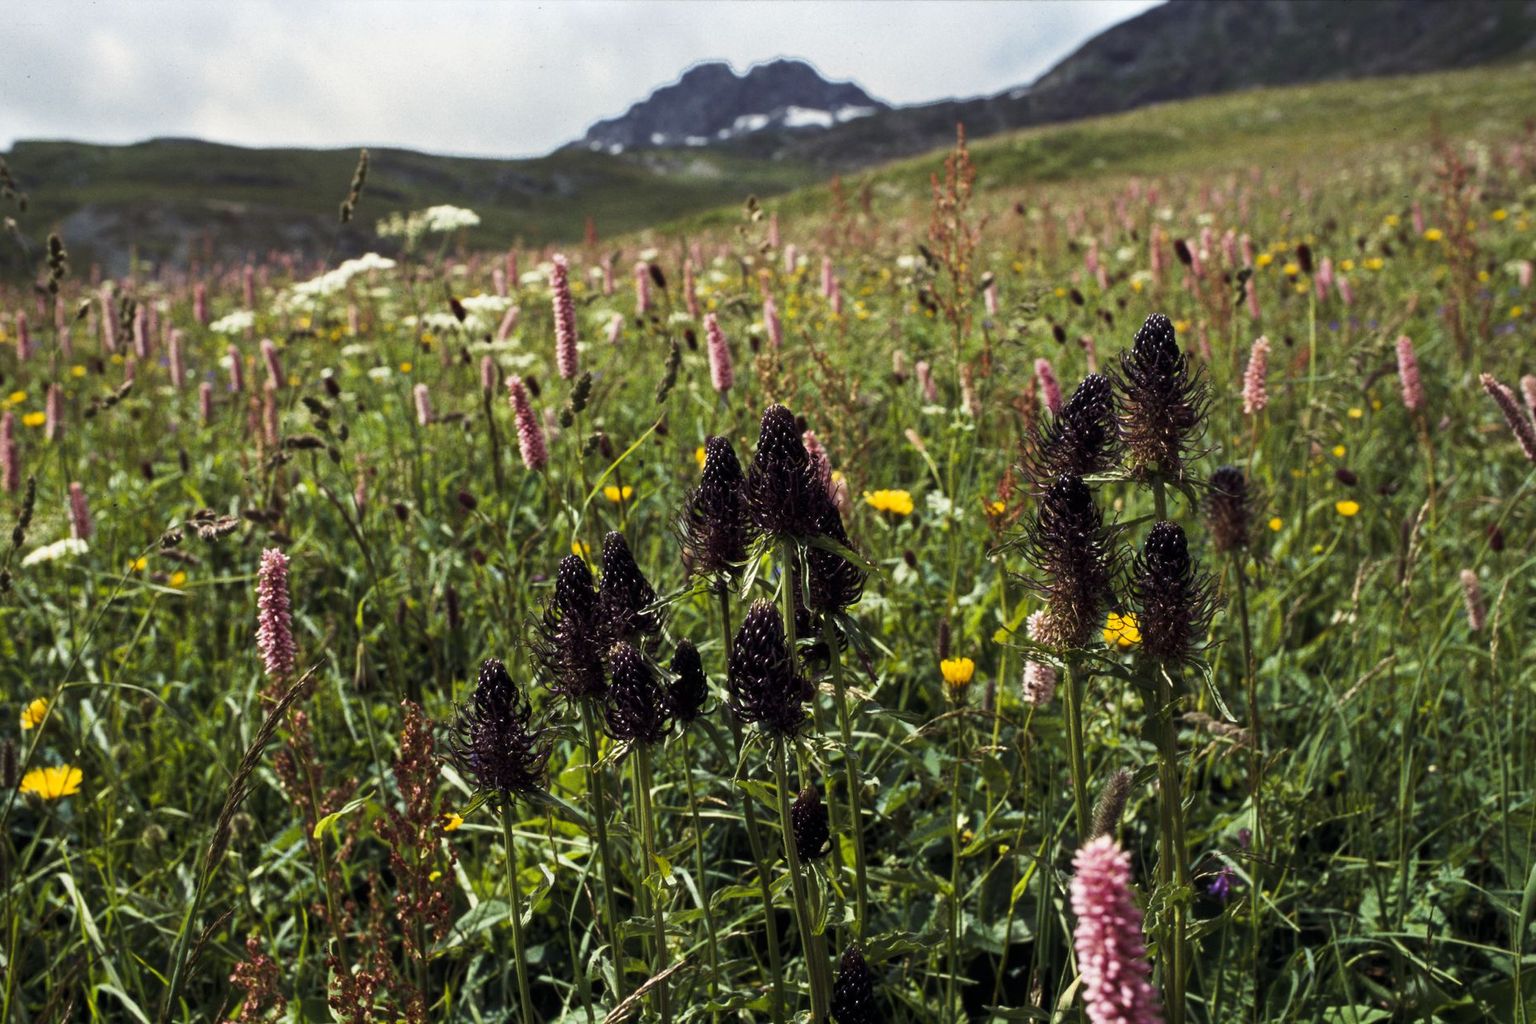 Auf ausgewählten Gipfeln des Schweizerischen Nationalparks wurden bereits vor 100 Jahren die Anzahl Pflanzenarten erfasst. Eine erneute Inventur zeigt dass die Artenzahl in der Zwischenzeit um durchschnittlich 44 Prozent zugenommen hat. Das Gipfelmonitoring seit 2002 des Projekts GLORIA zeigt, dass dieser Trend vor allem darauf beruht, dass mit der Klimaerwärmung mehr Pflanzenarten in grössere Höhen vordringen können (Wipf in: Cratschla 2/2013 und Cratschla 1/2016) Fiederzwenken-Kolonien werden im SNP seit 1936 unter anderem auf der Alp Stabelchod auf 1950 m dokumentiert. Mittlerweile liegen die höchsten Fundorte in der Nationalparkregion bereits auf über 2300 m. Die Pflanze konkurrenziert unter anderem Futterpflanzen der Rothirsche. (Krüsi in: Atlas des Schweizerischen Nationaparks 2013, S. 94)